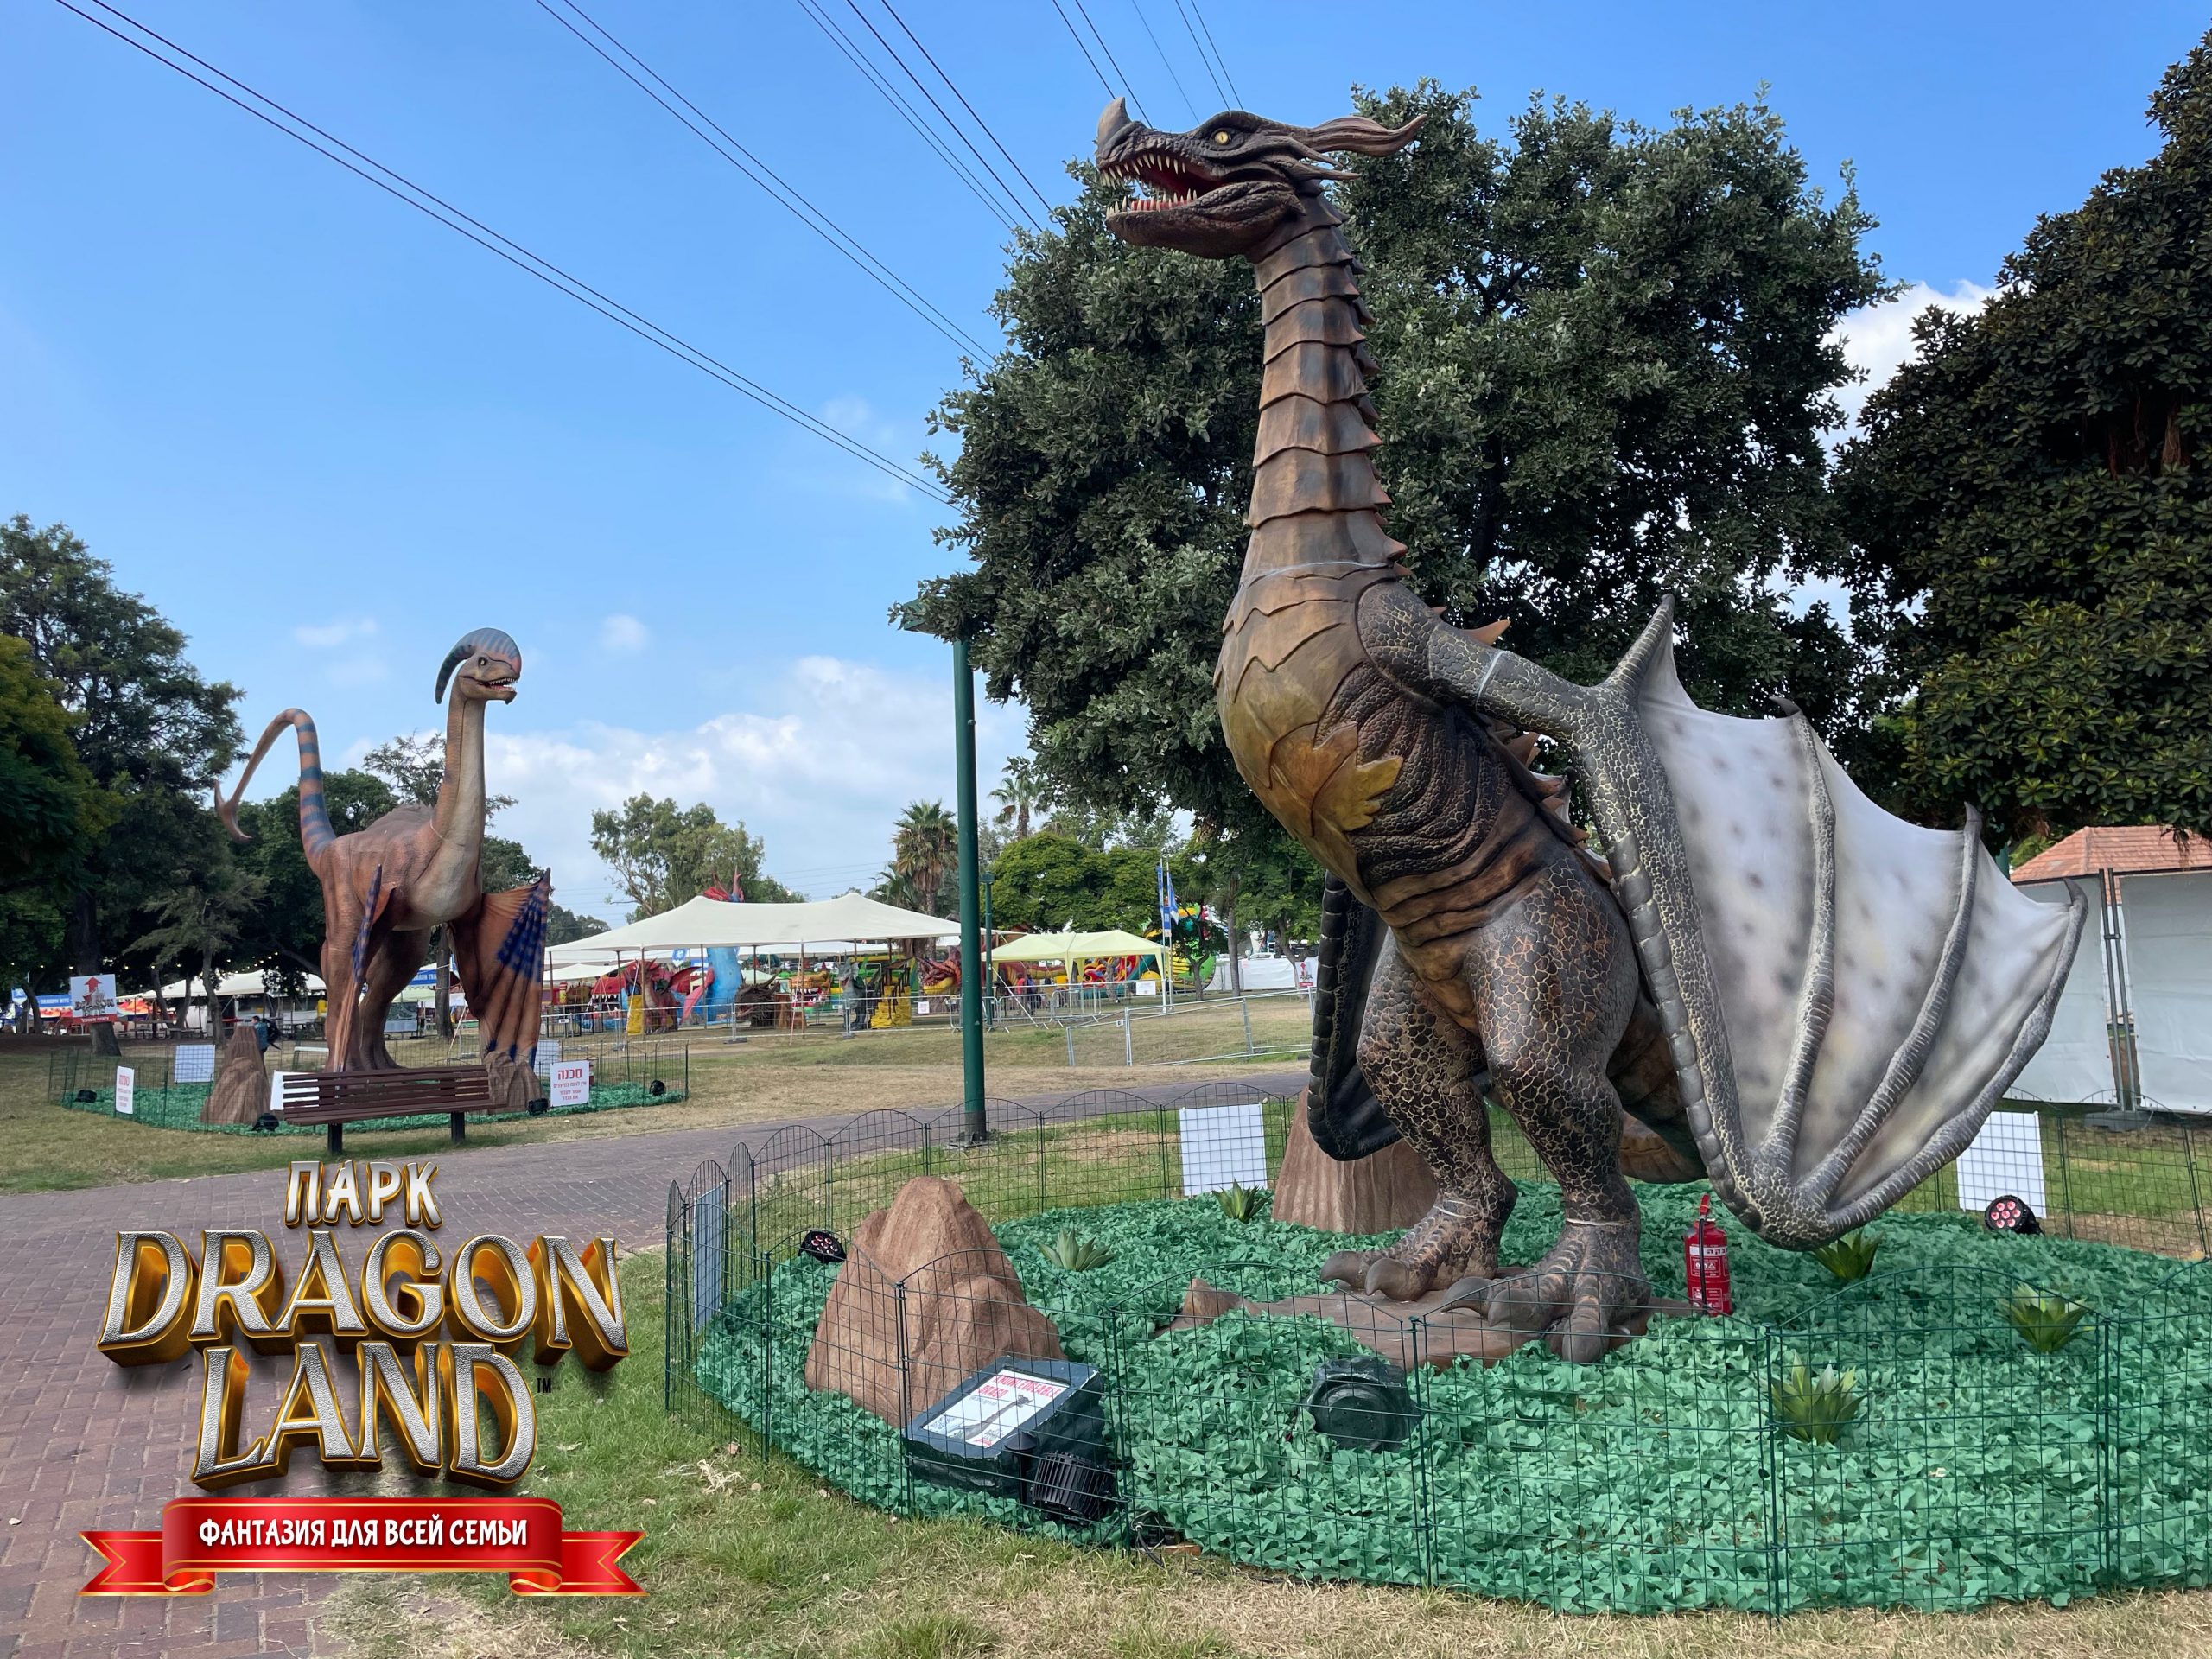 Драконы приземлились в городе — парк Dragon Land открылся в Тель-Авиве!